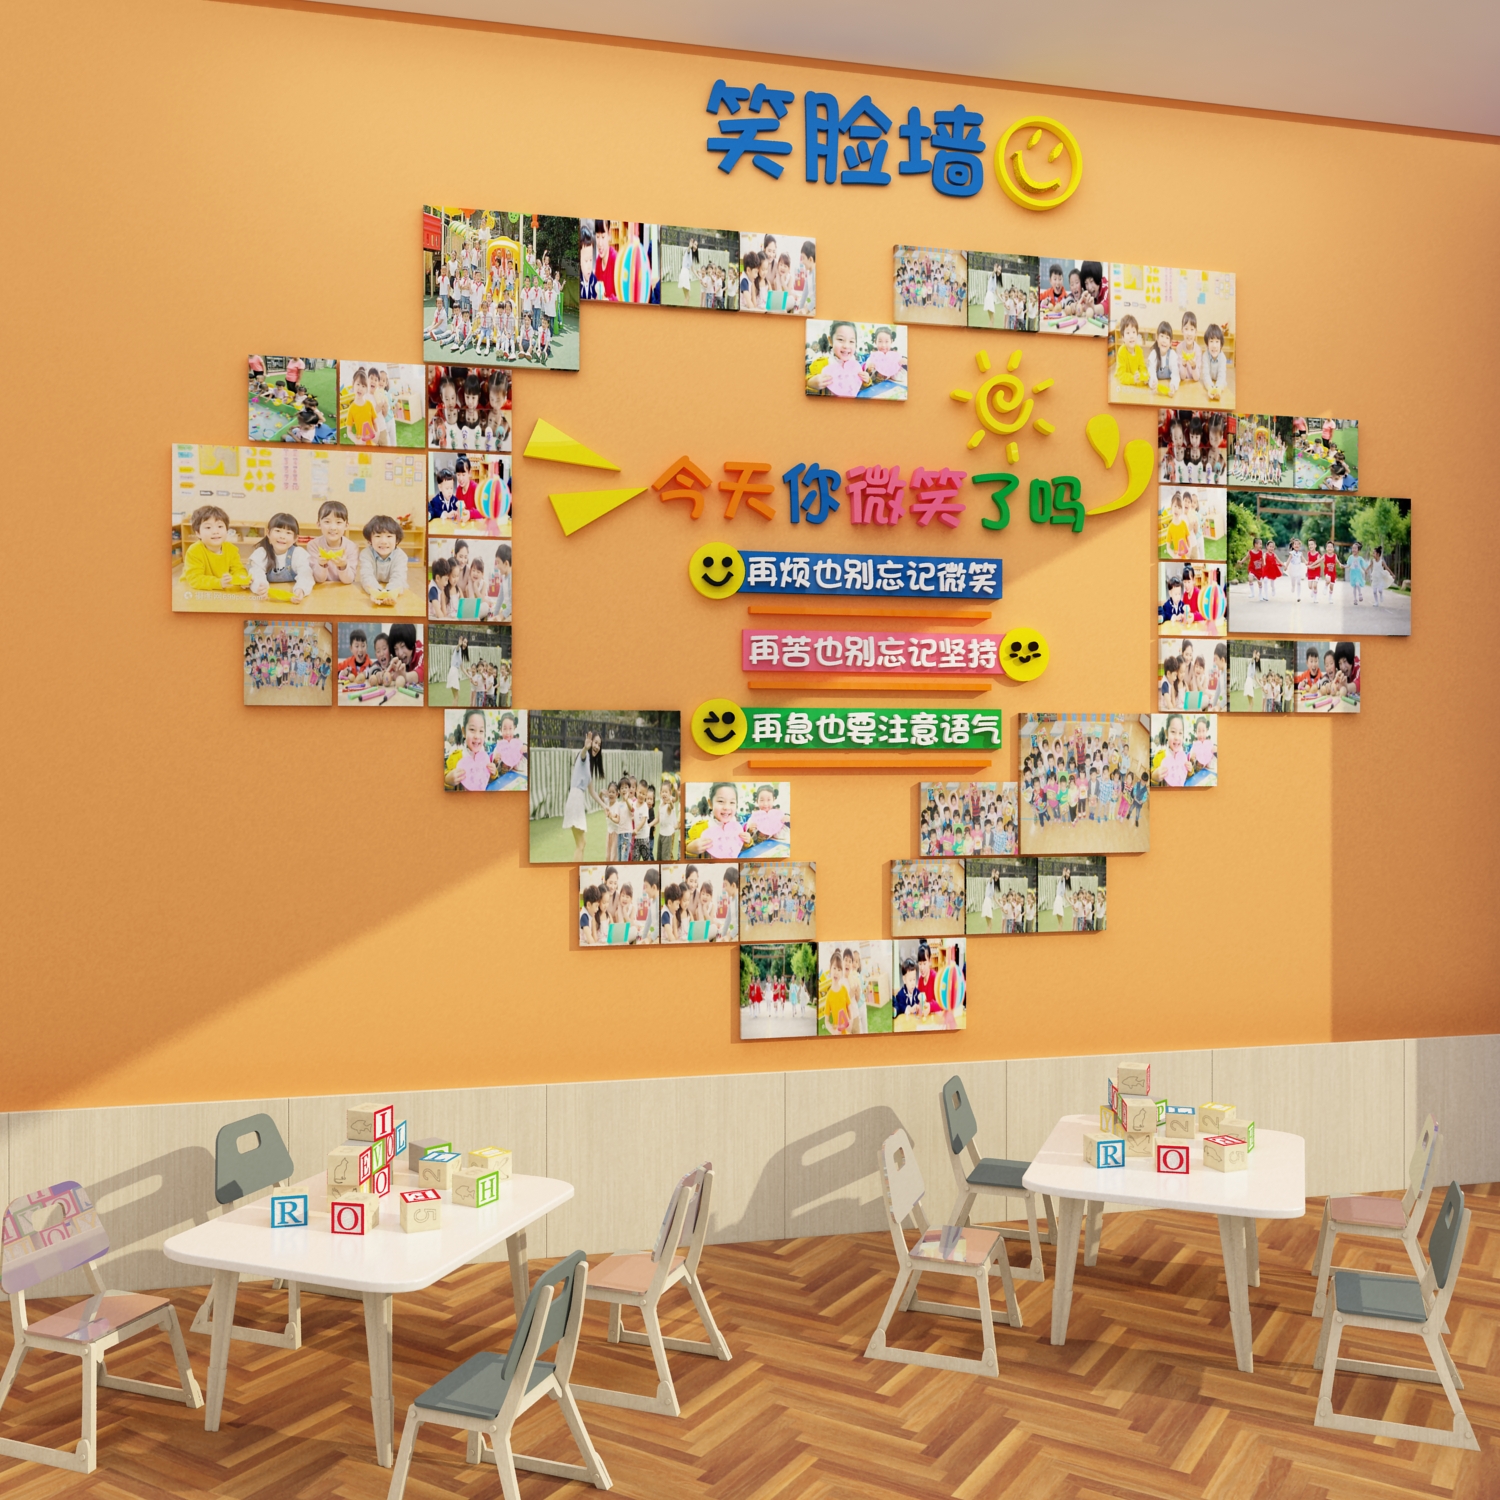 幼儿园笑脸文化墙面装饰教师风采展示照片走廊环创主题设计互动贴